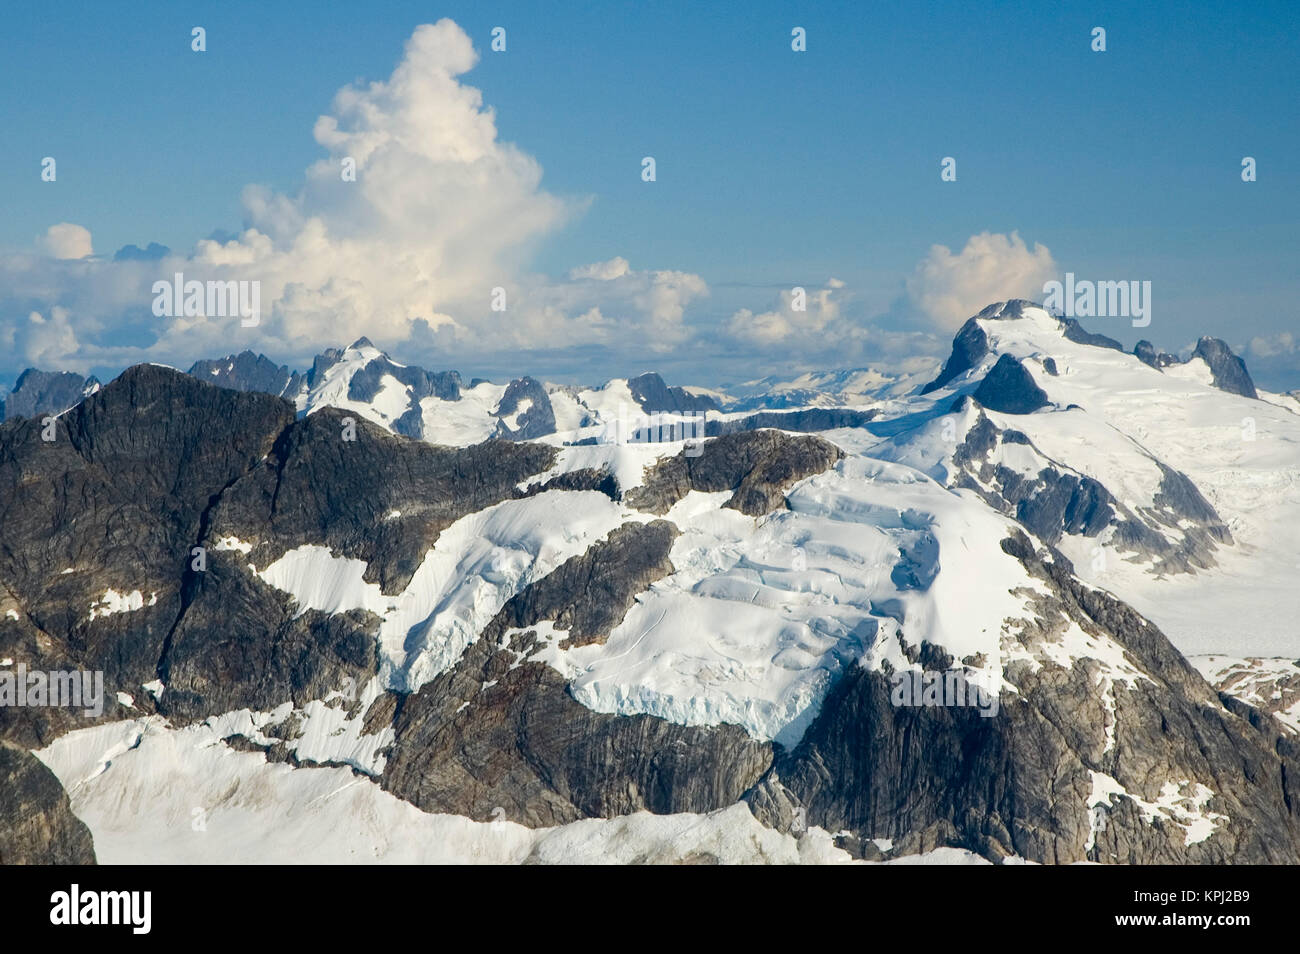 Nordamerika, USA, AK. Dramatische Coastal Mountains - Grenze zwischen uns und British Columbia - vista von Wasserflugzeug Stockfoto